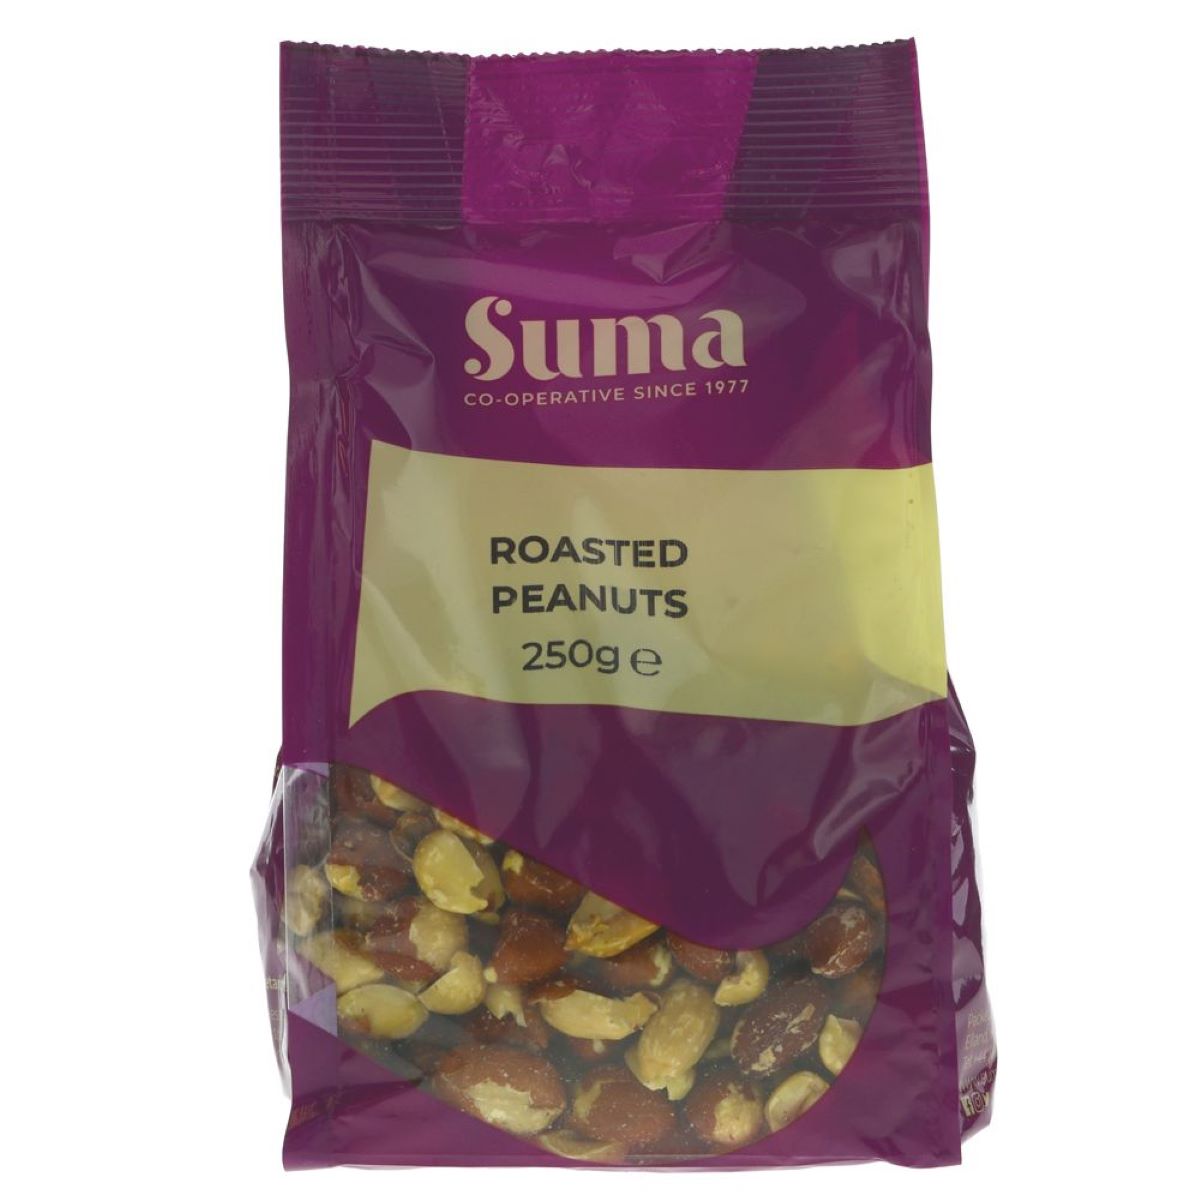 Suma- Roasted Peanuts 250g